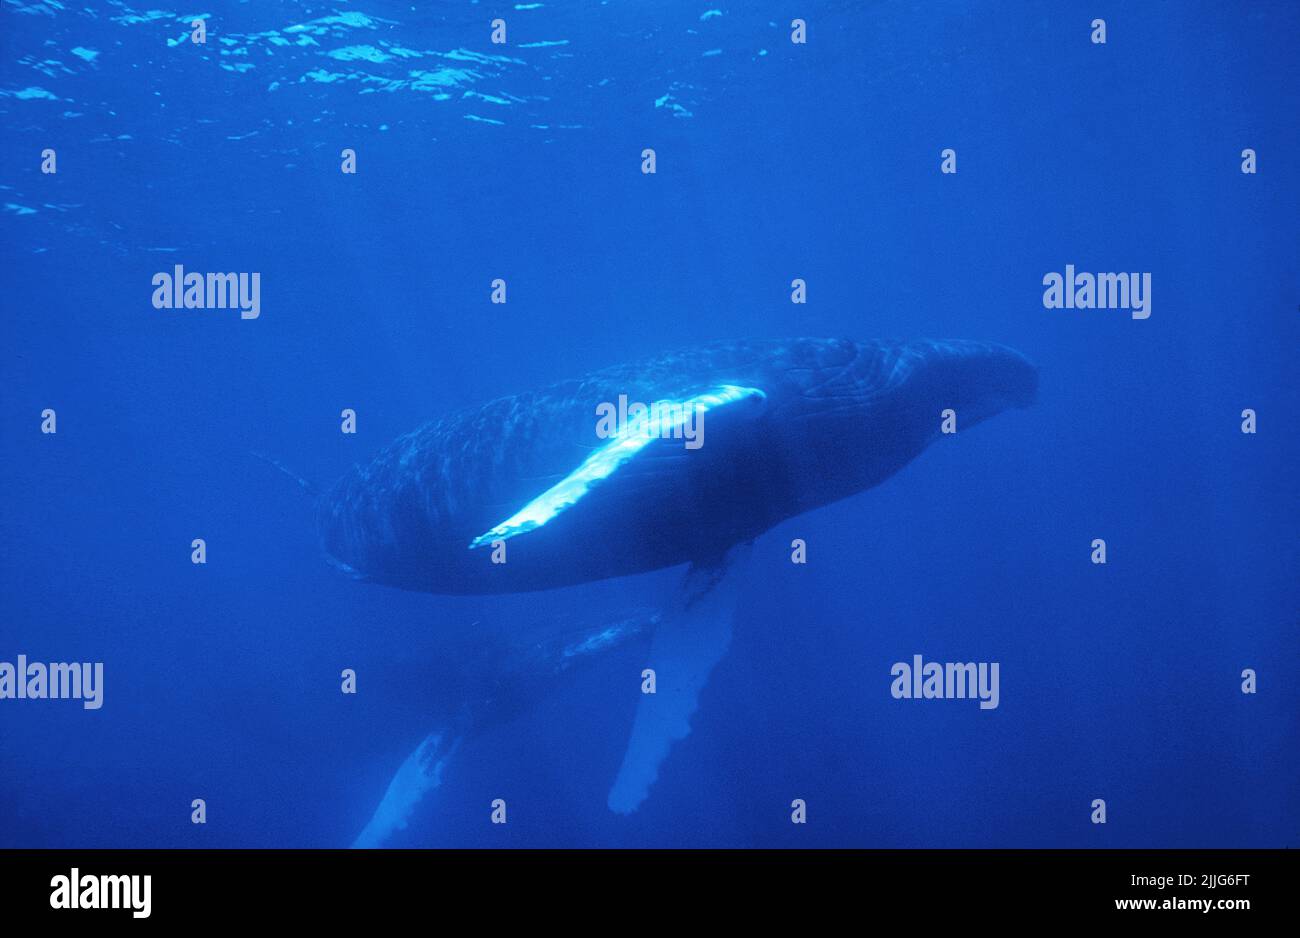 Buckelwal (Megaptera novaeangliae), im blauen Wasser, Silverbanks, Dominikanische Republik, Karibik | Humpback Whale (Megaptera novaeangliae), in blue Stock Photo